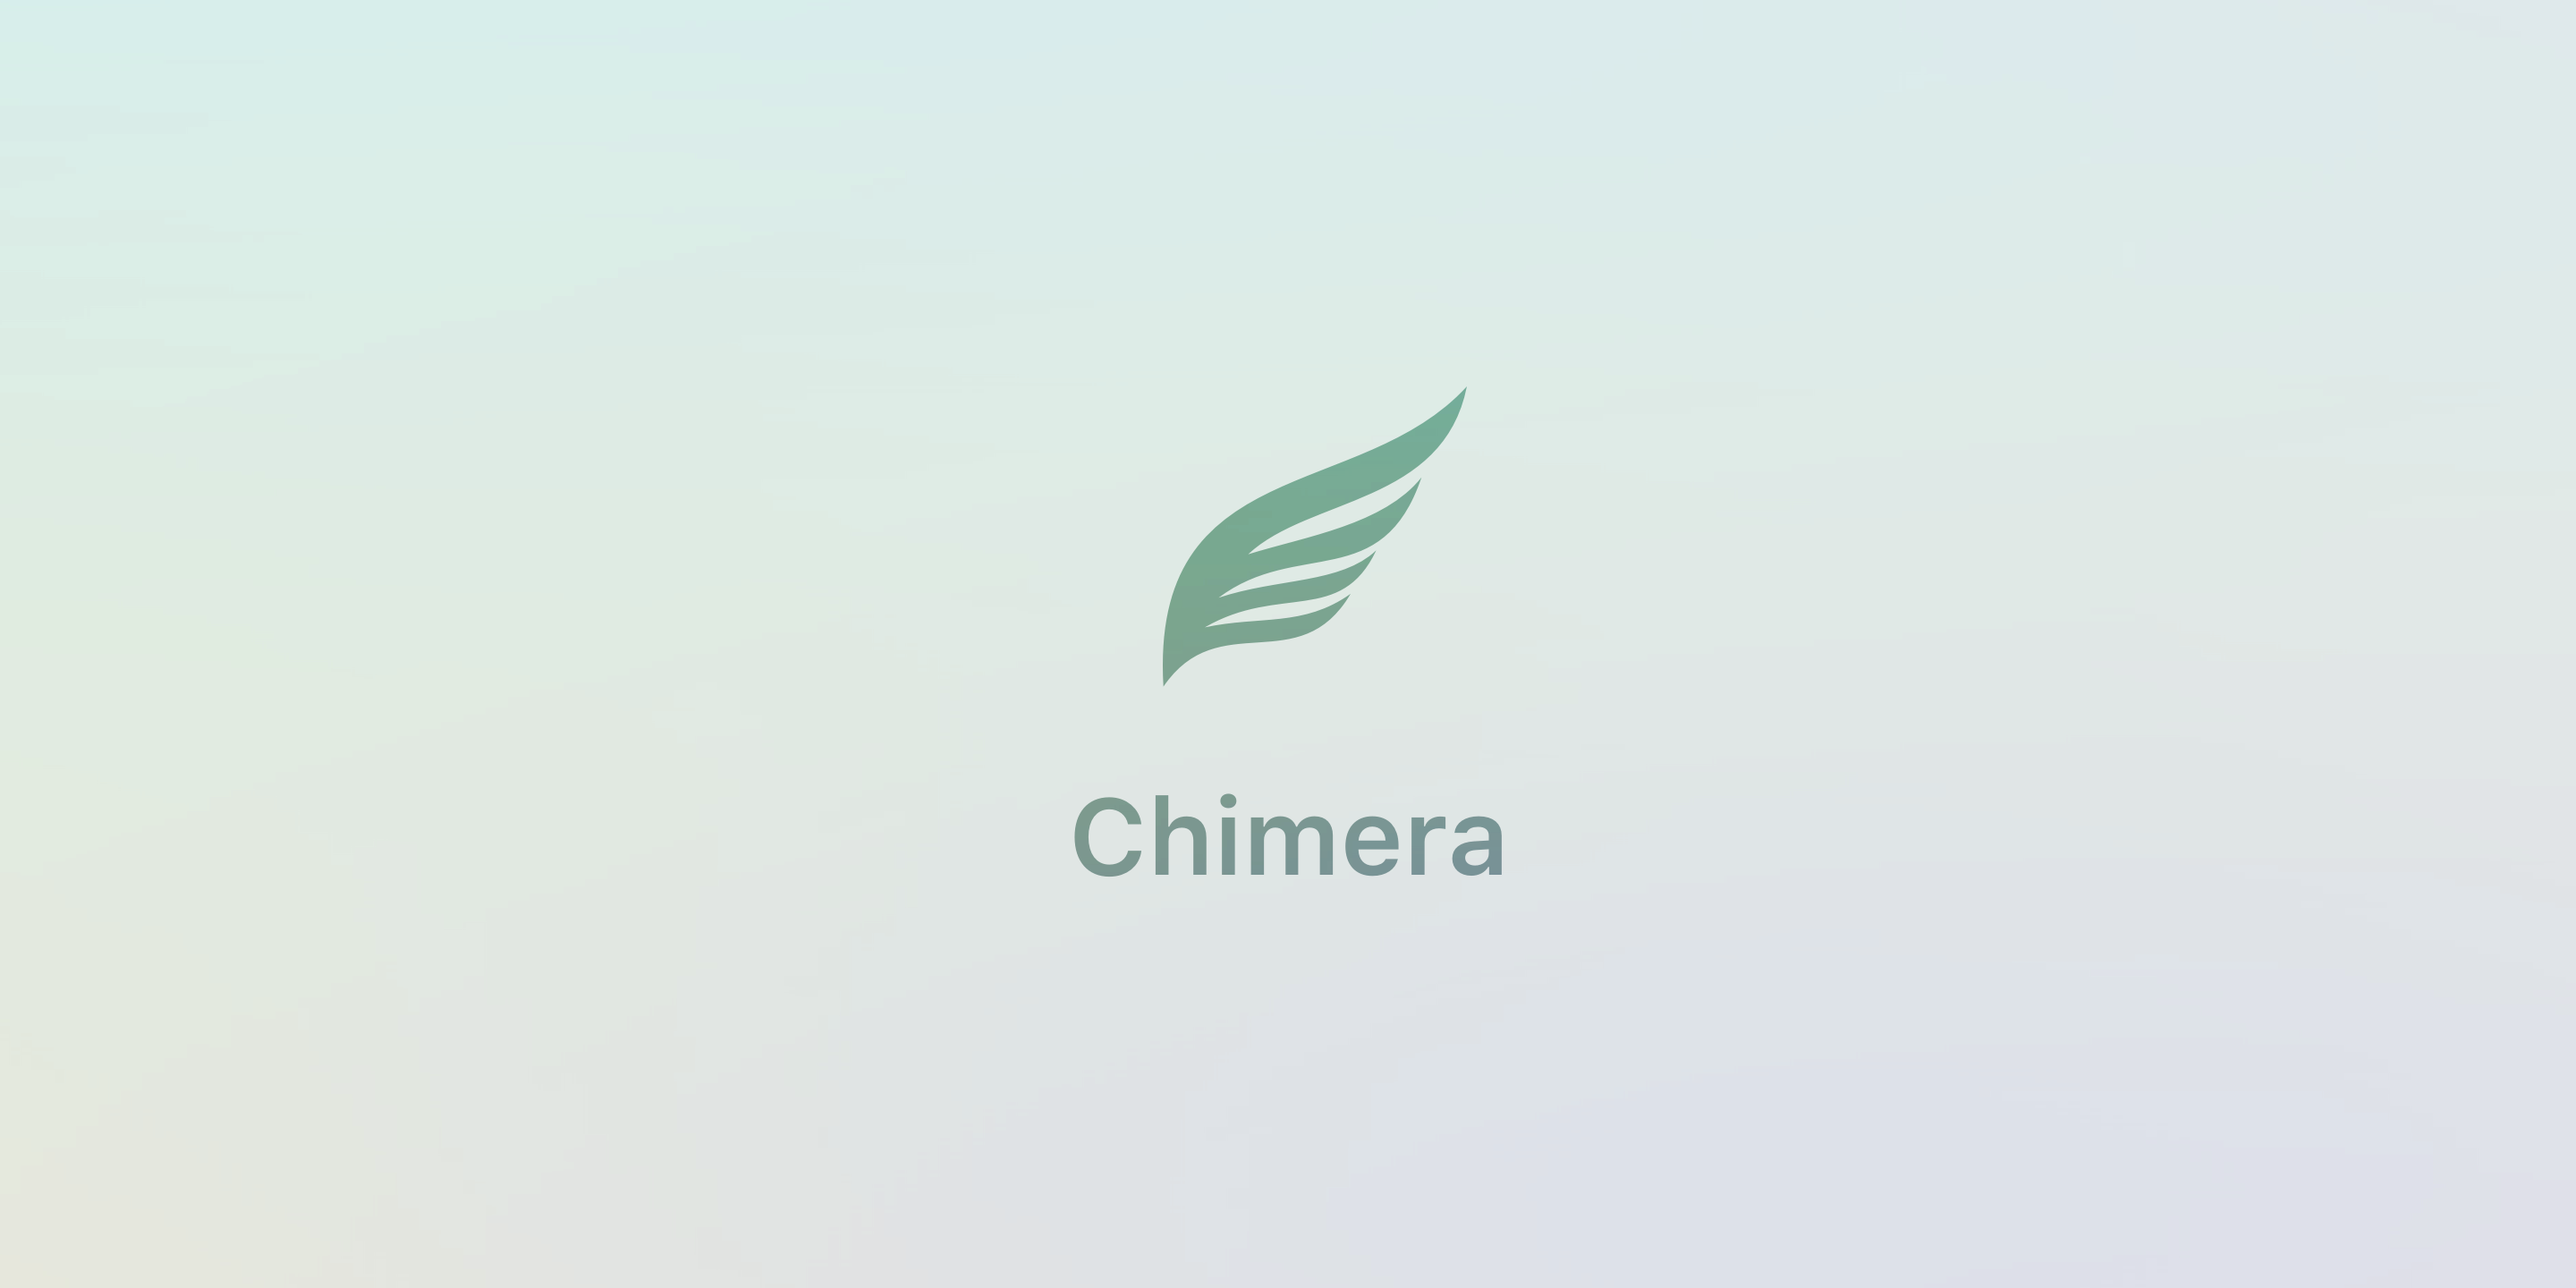 Chimera v1.3.6 phát hành với độ tin cậy Sock Puppet tăng, sửa lỗi 2